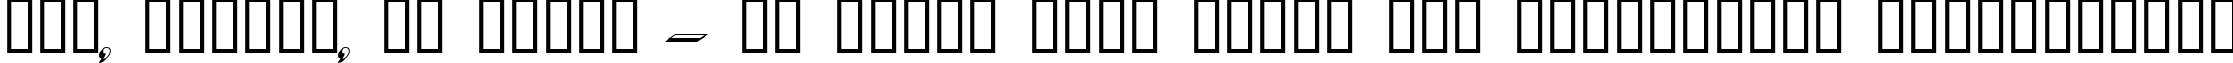 Пример написания шрифтом Dumbledor 1 3D текста на украинском